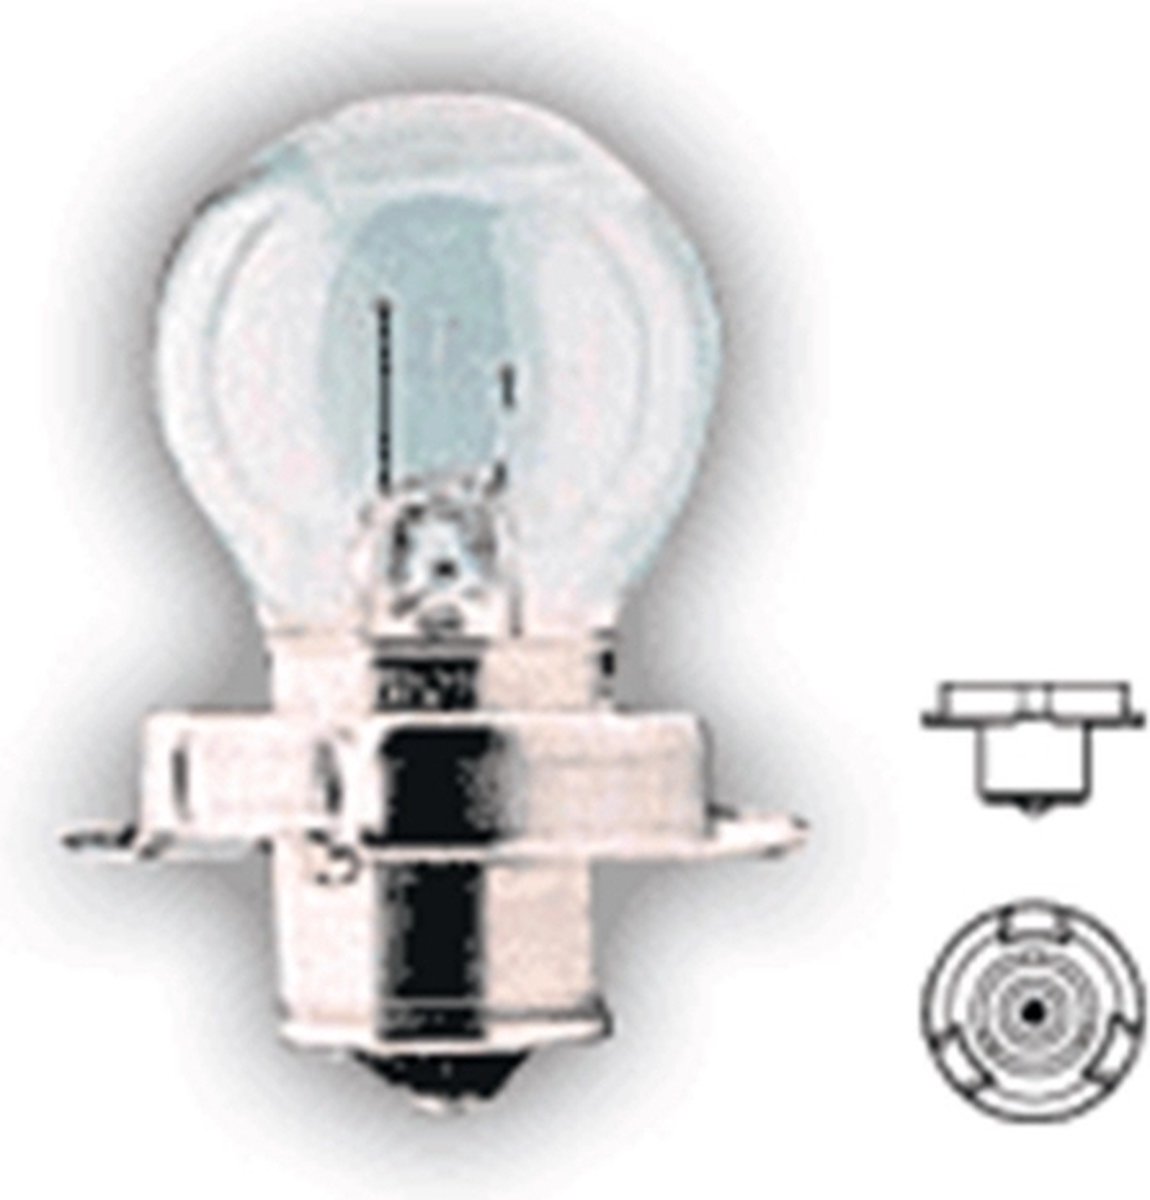 Neglin - Bromfietslamp 12V 15 Watt - P26s